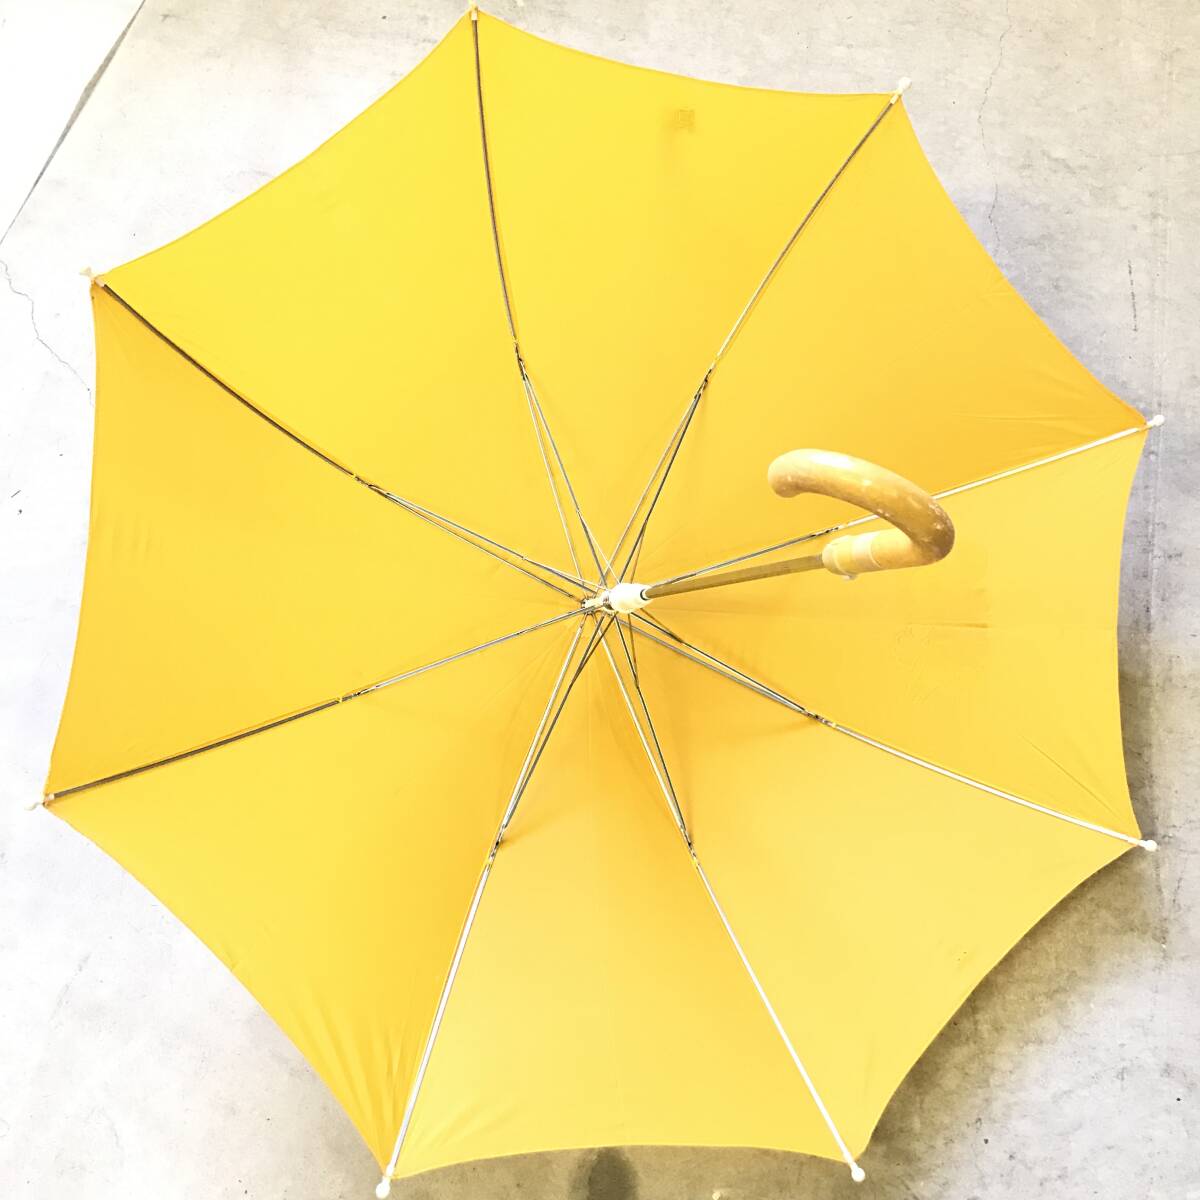 # retro зонт непромокаемая одежда зонт от дождя зонт детский Kids желтый цвет герой нейлон 100% аниме .8шт.@ хранение товар текущее состояние товар #C30284